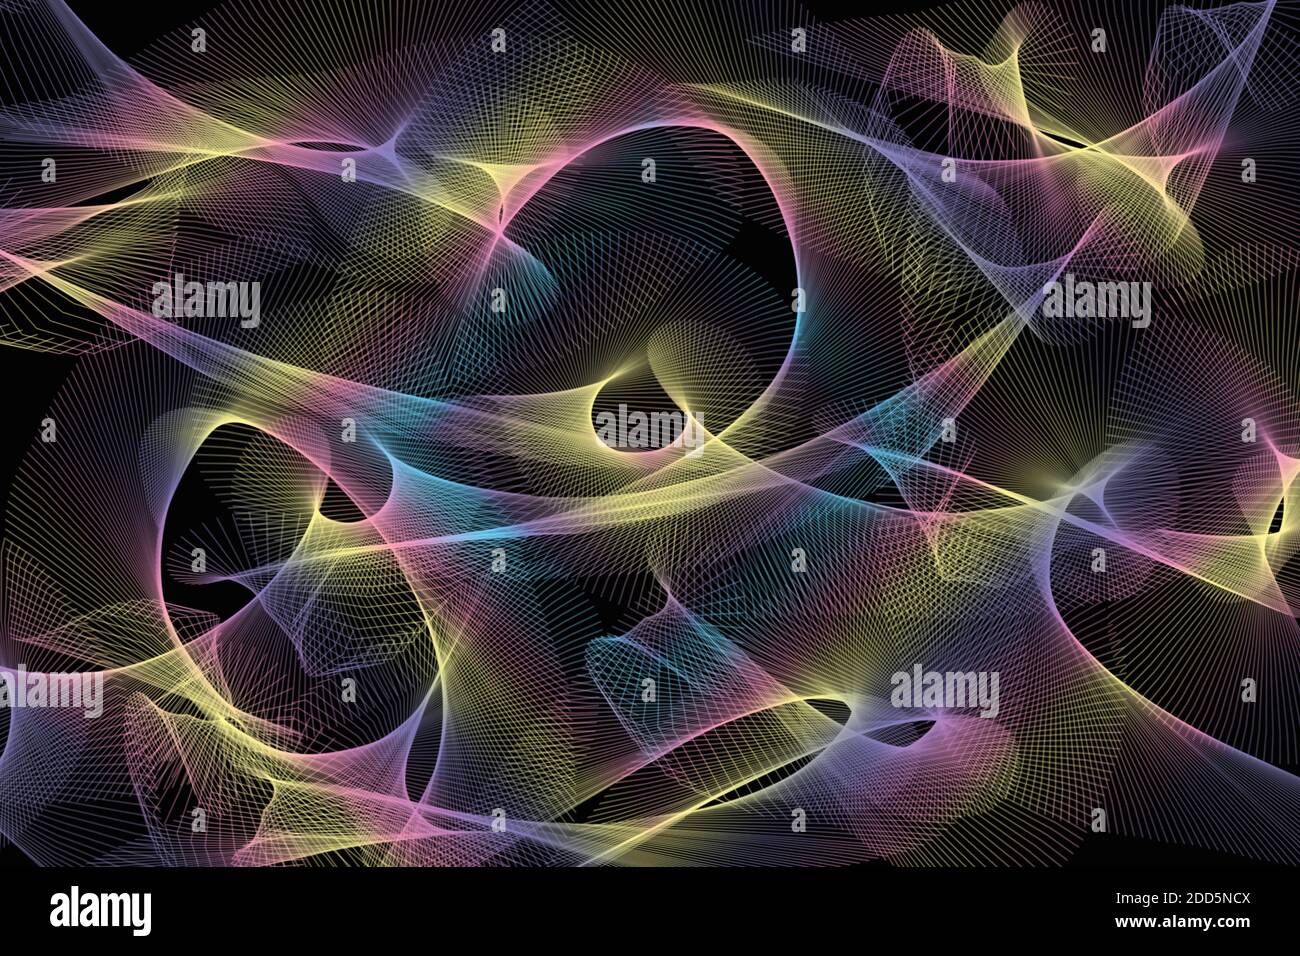 Illustrazione astratta di sfondo di linee a spirale frattale multicolore su sfondo nero. Foto Stock